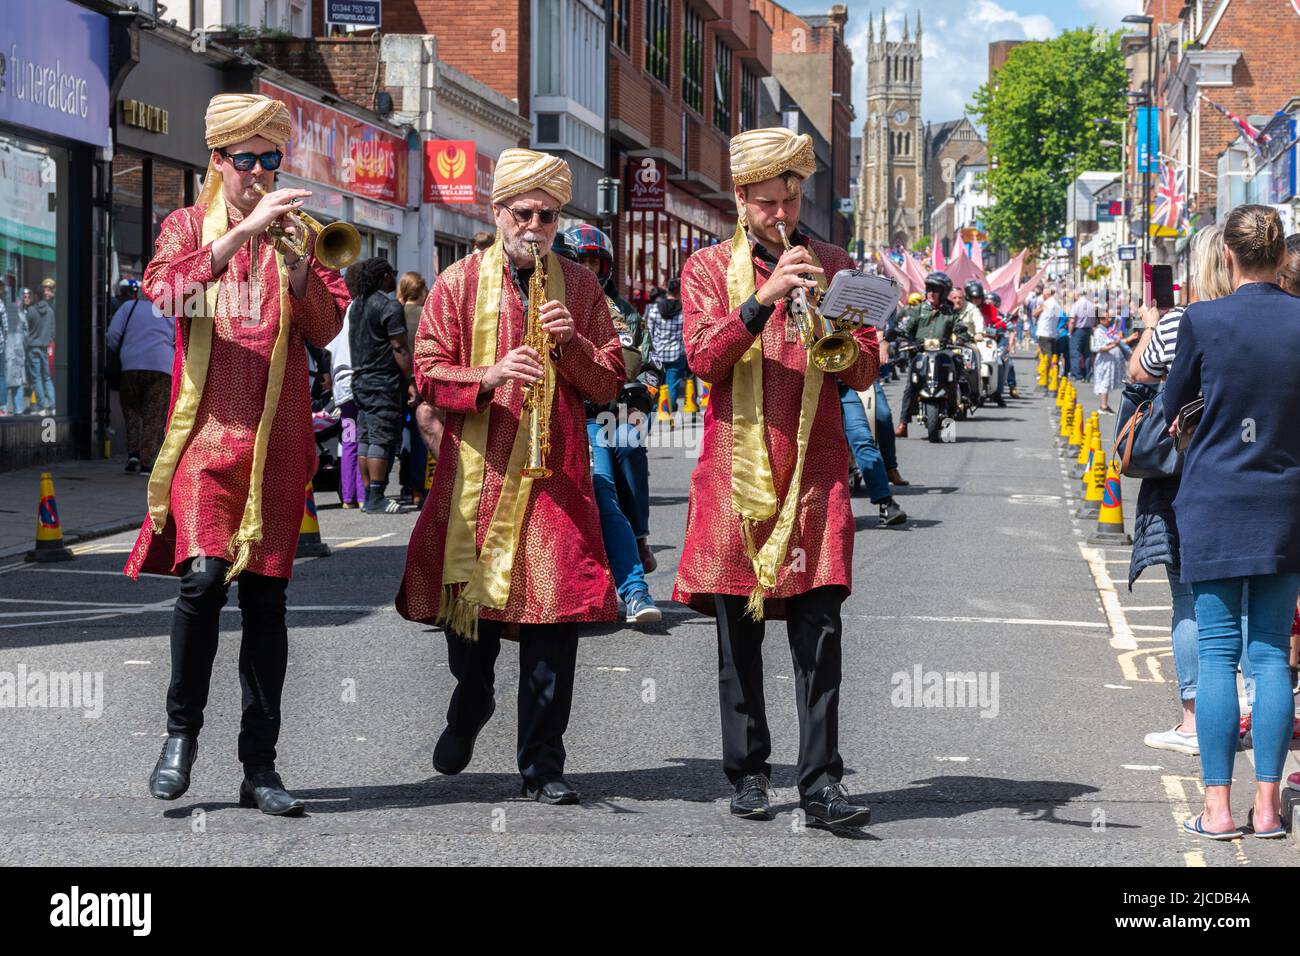 Musiciens en costumes indiens participant au Grand Parade à la fête de Victoria, un événement annuel à Aldershot, Hampshire, Angleterre, Royaume-Uni Banque D'Images